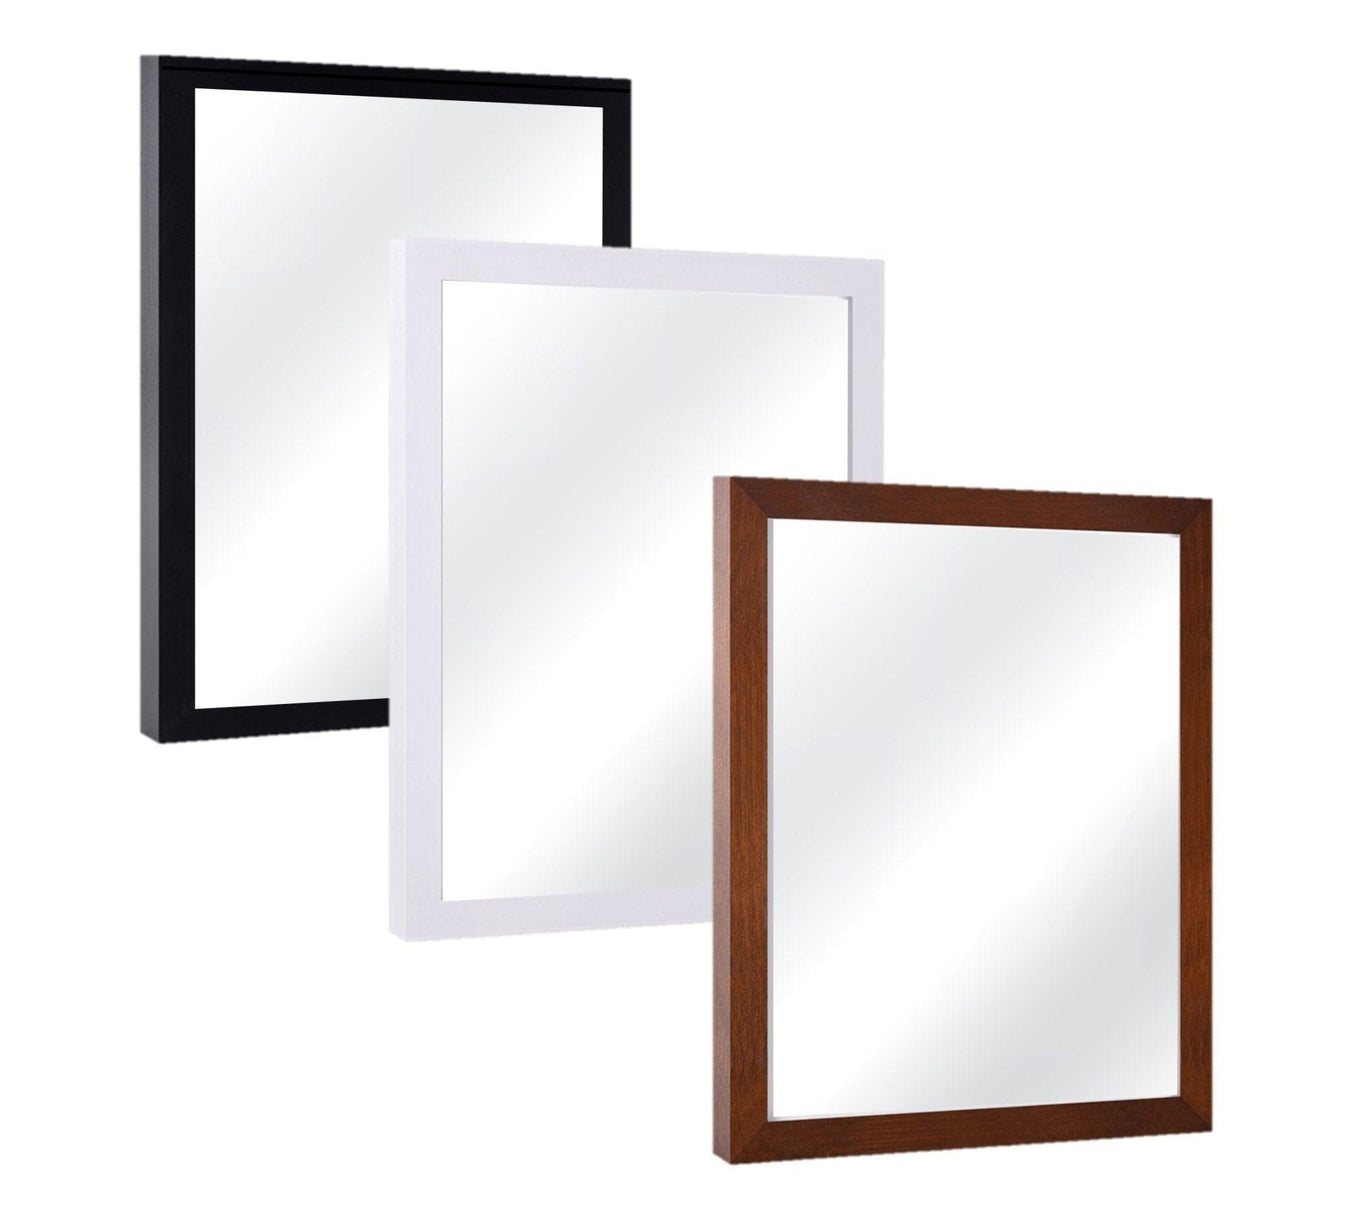 Custom Framed Mirrors for wall decor - Modern Memory Design Picture frames - New Jersey Frame Shop Custom Framing